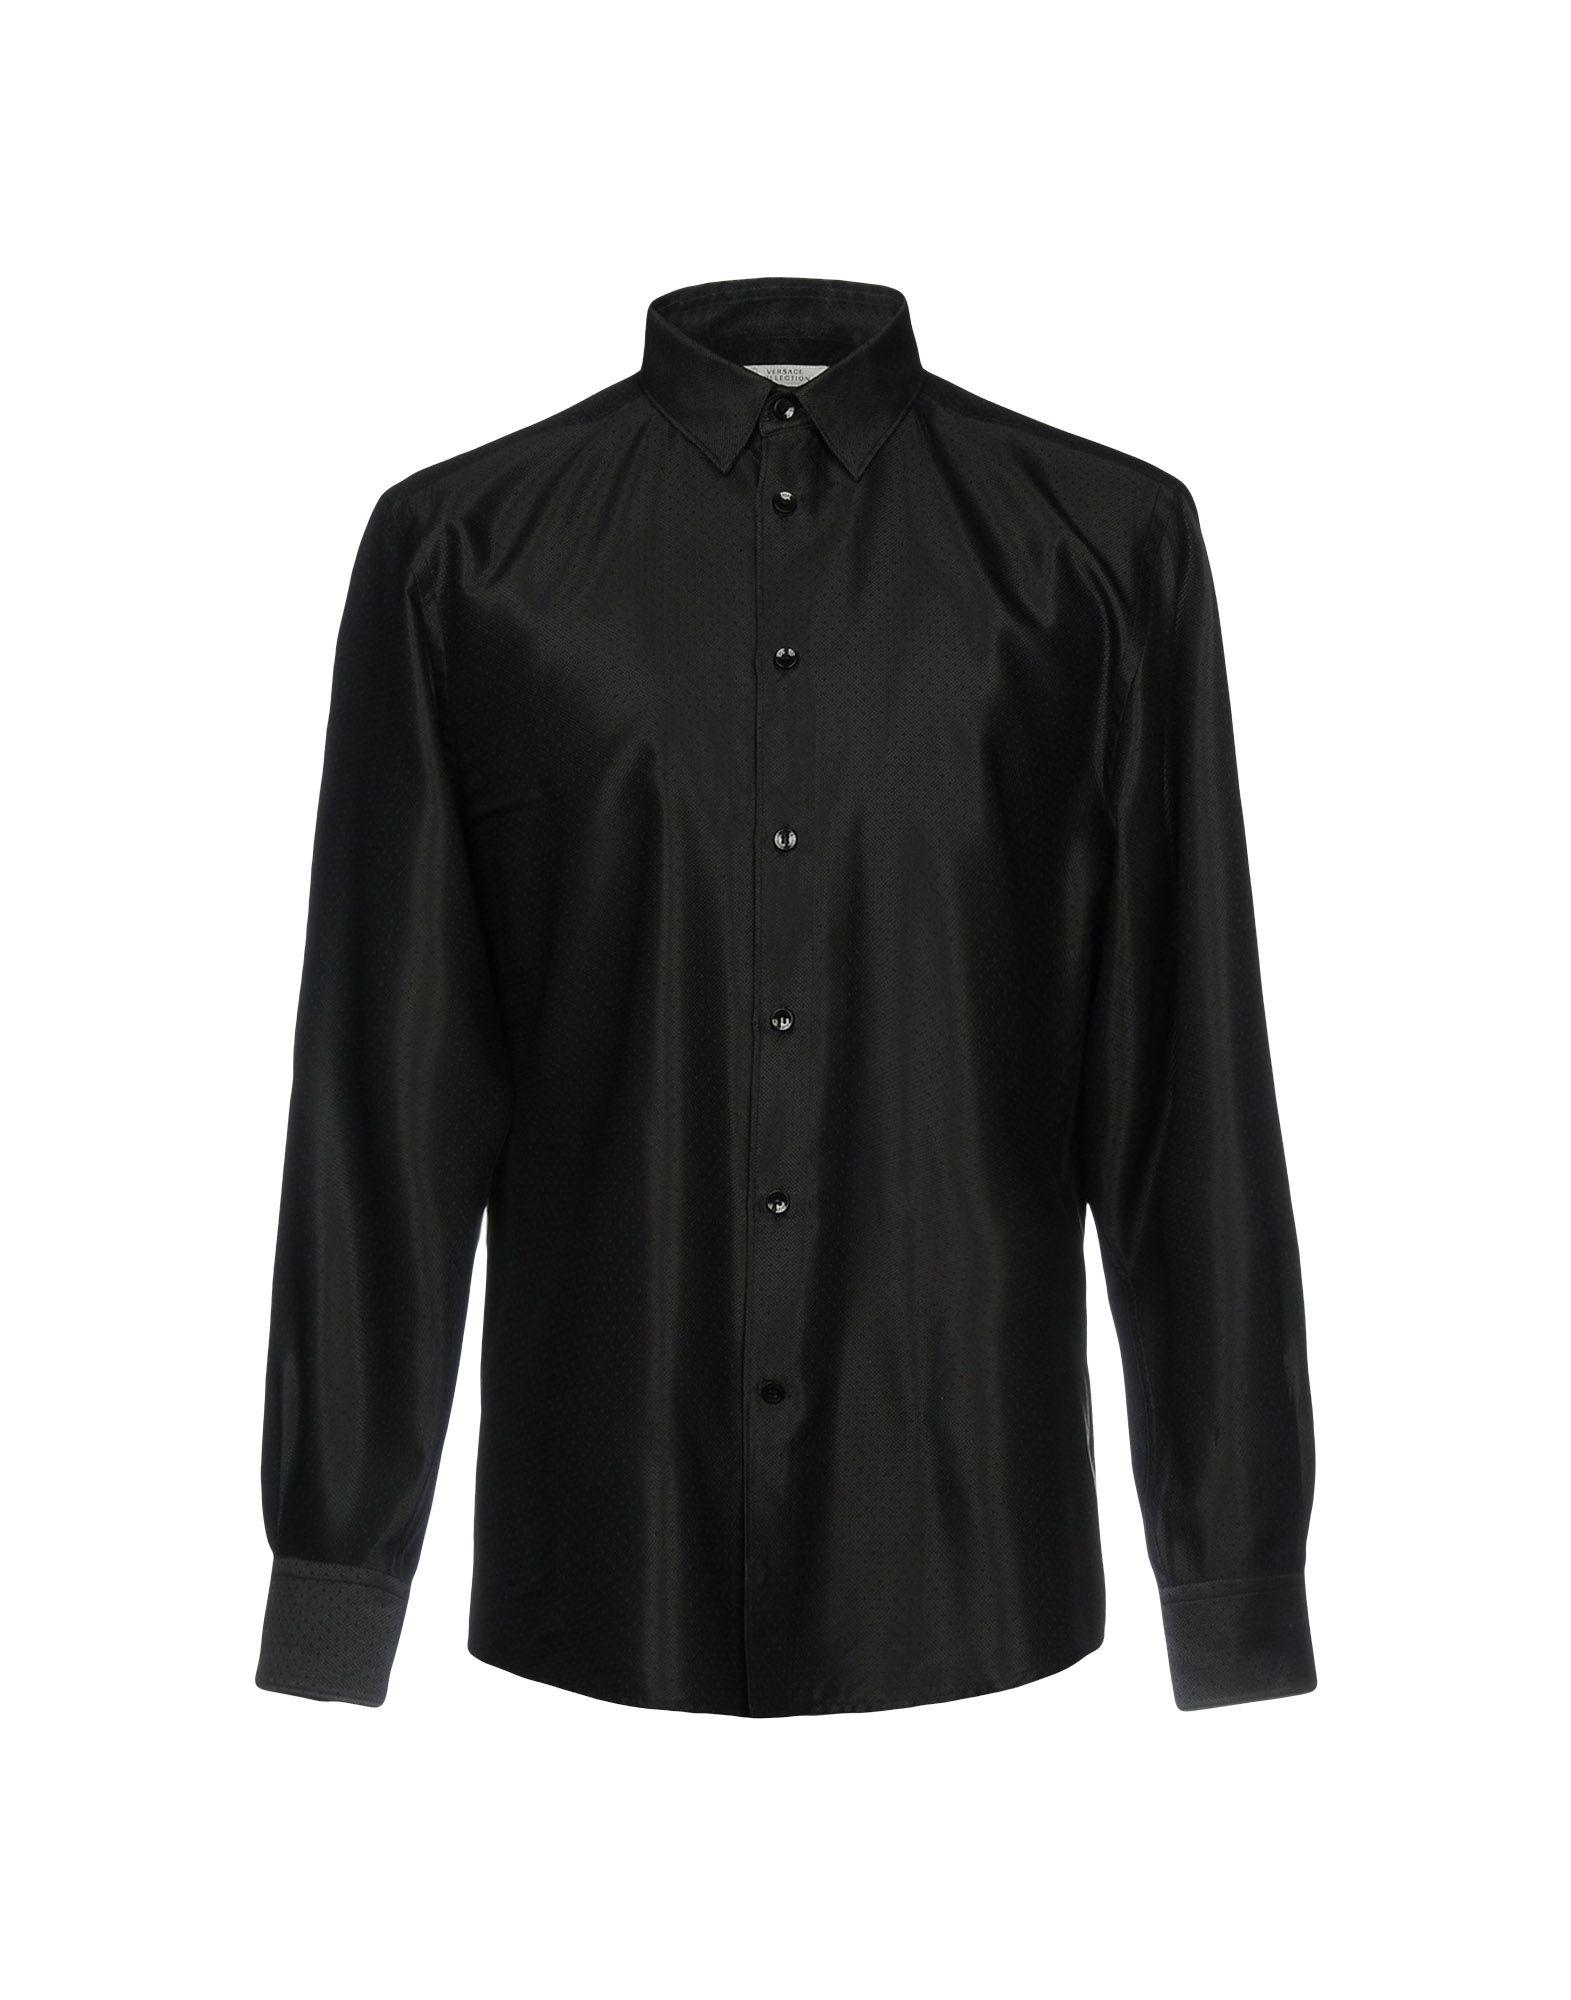 Красивая черная рубашка. Рубашка Versace collection. Рубашка Версаче мужская черная. Рубашка атласная мужская Версаче. Черная рубашка Хенджина Версаче.